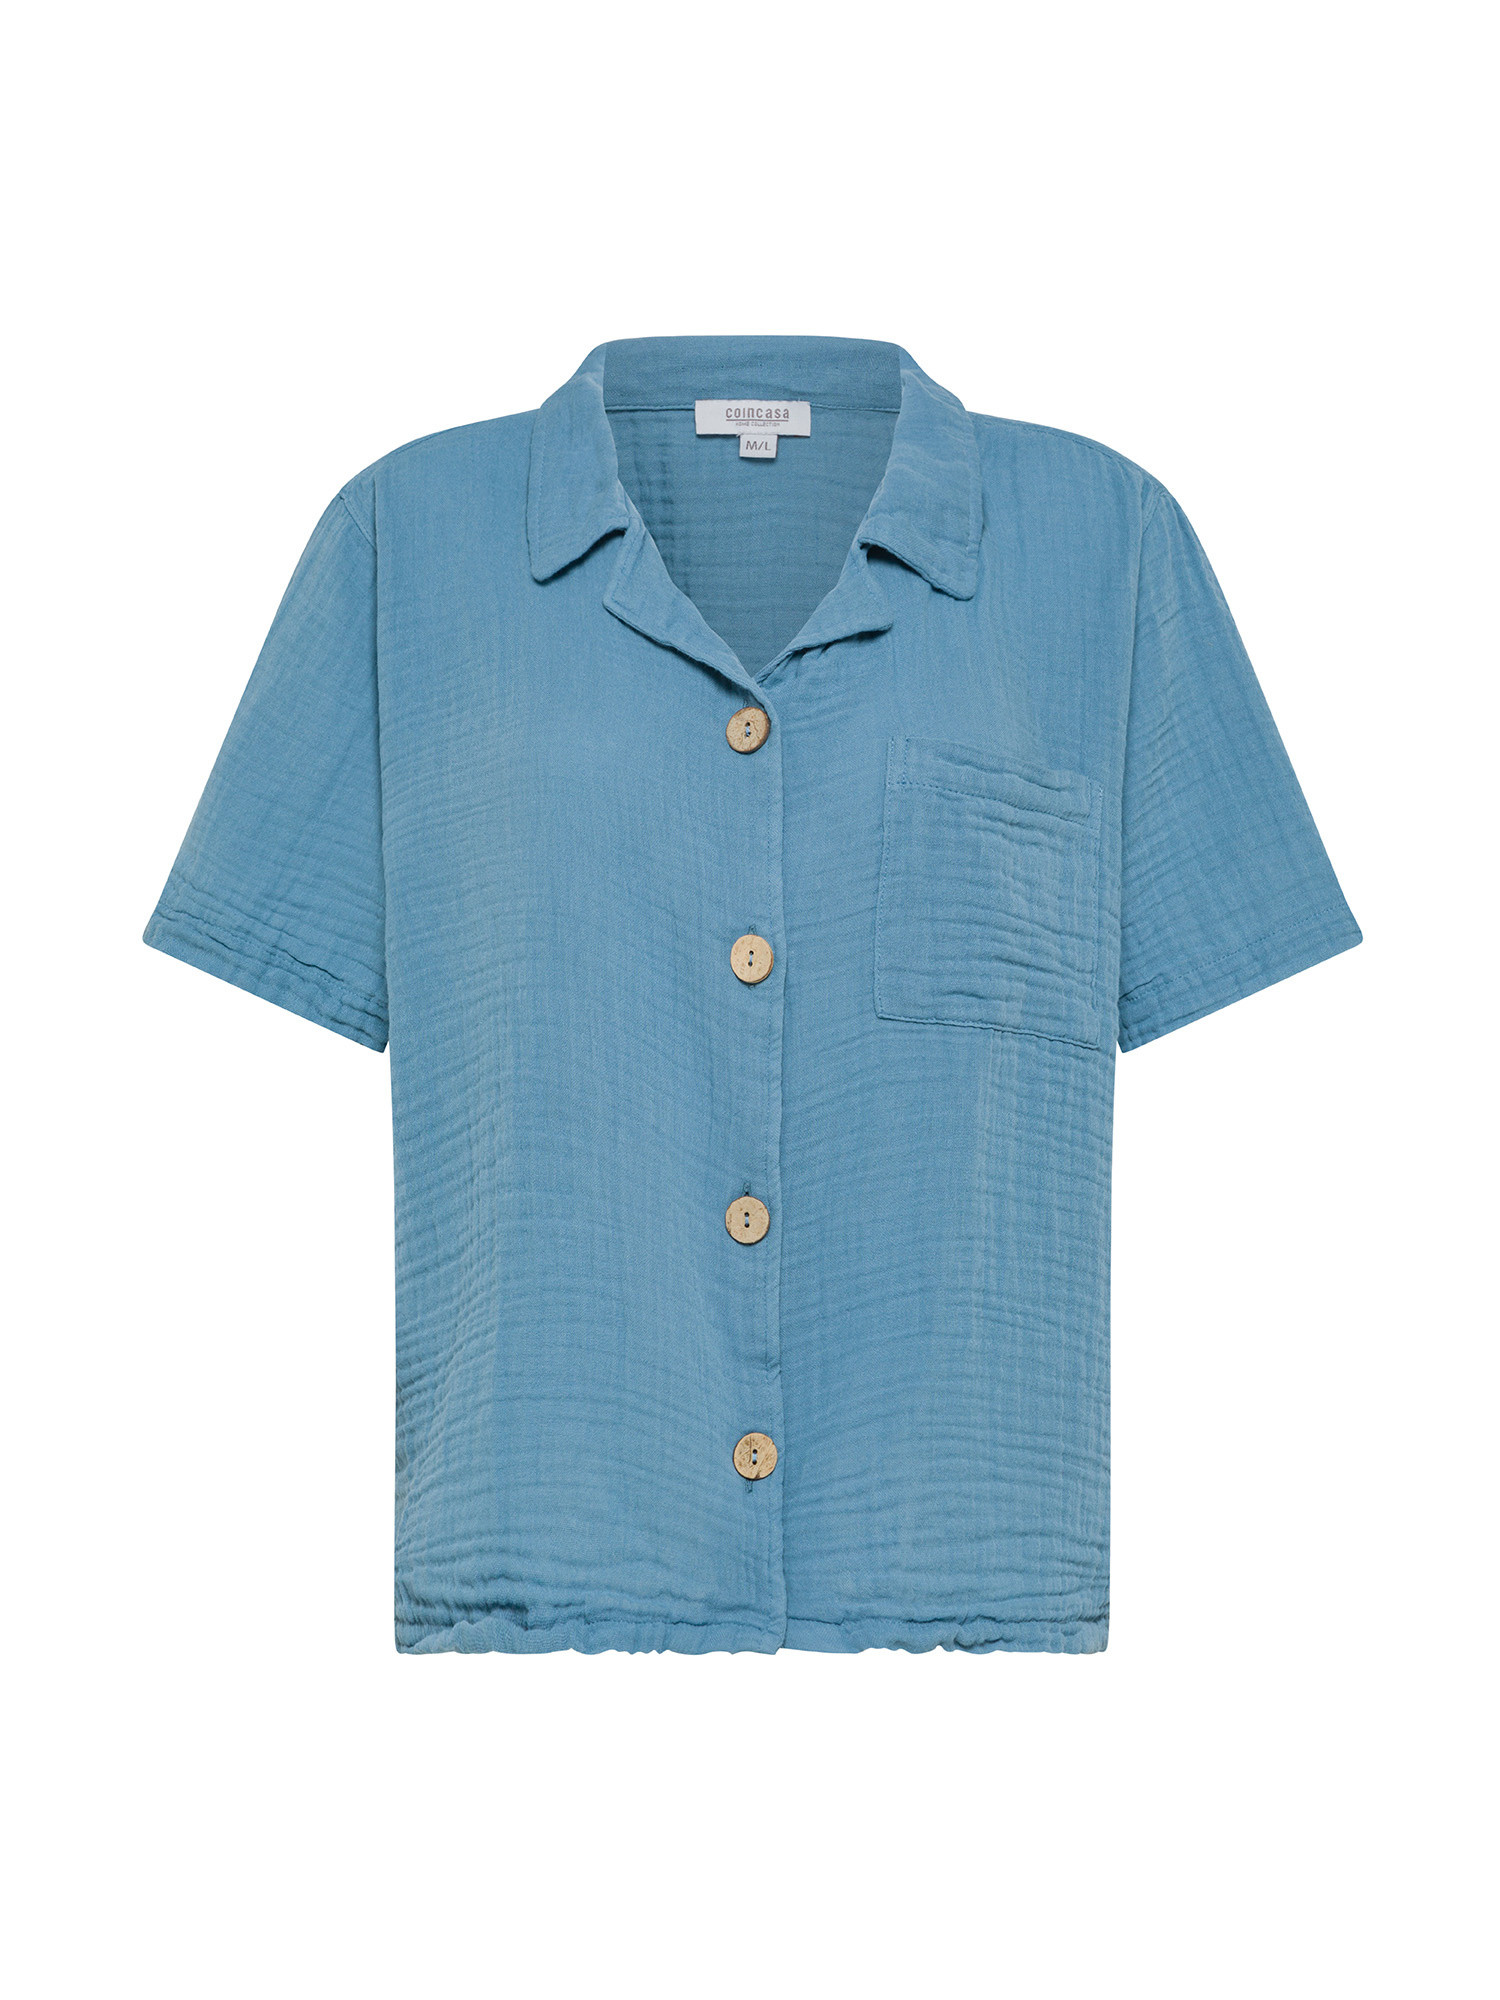 Camicia in mussola di cotone mezza manica., Azzurro, large image number 0